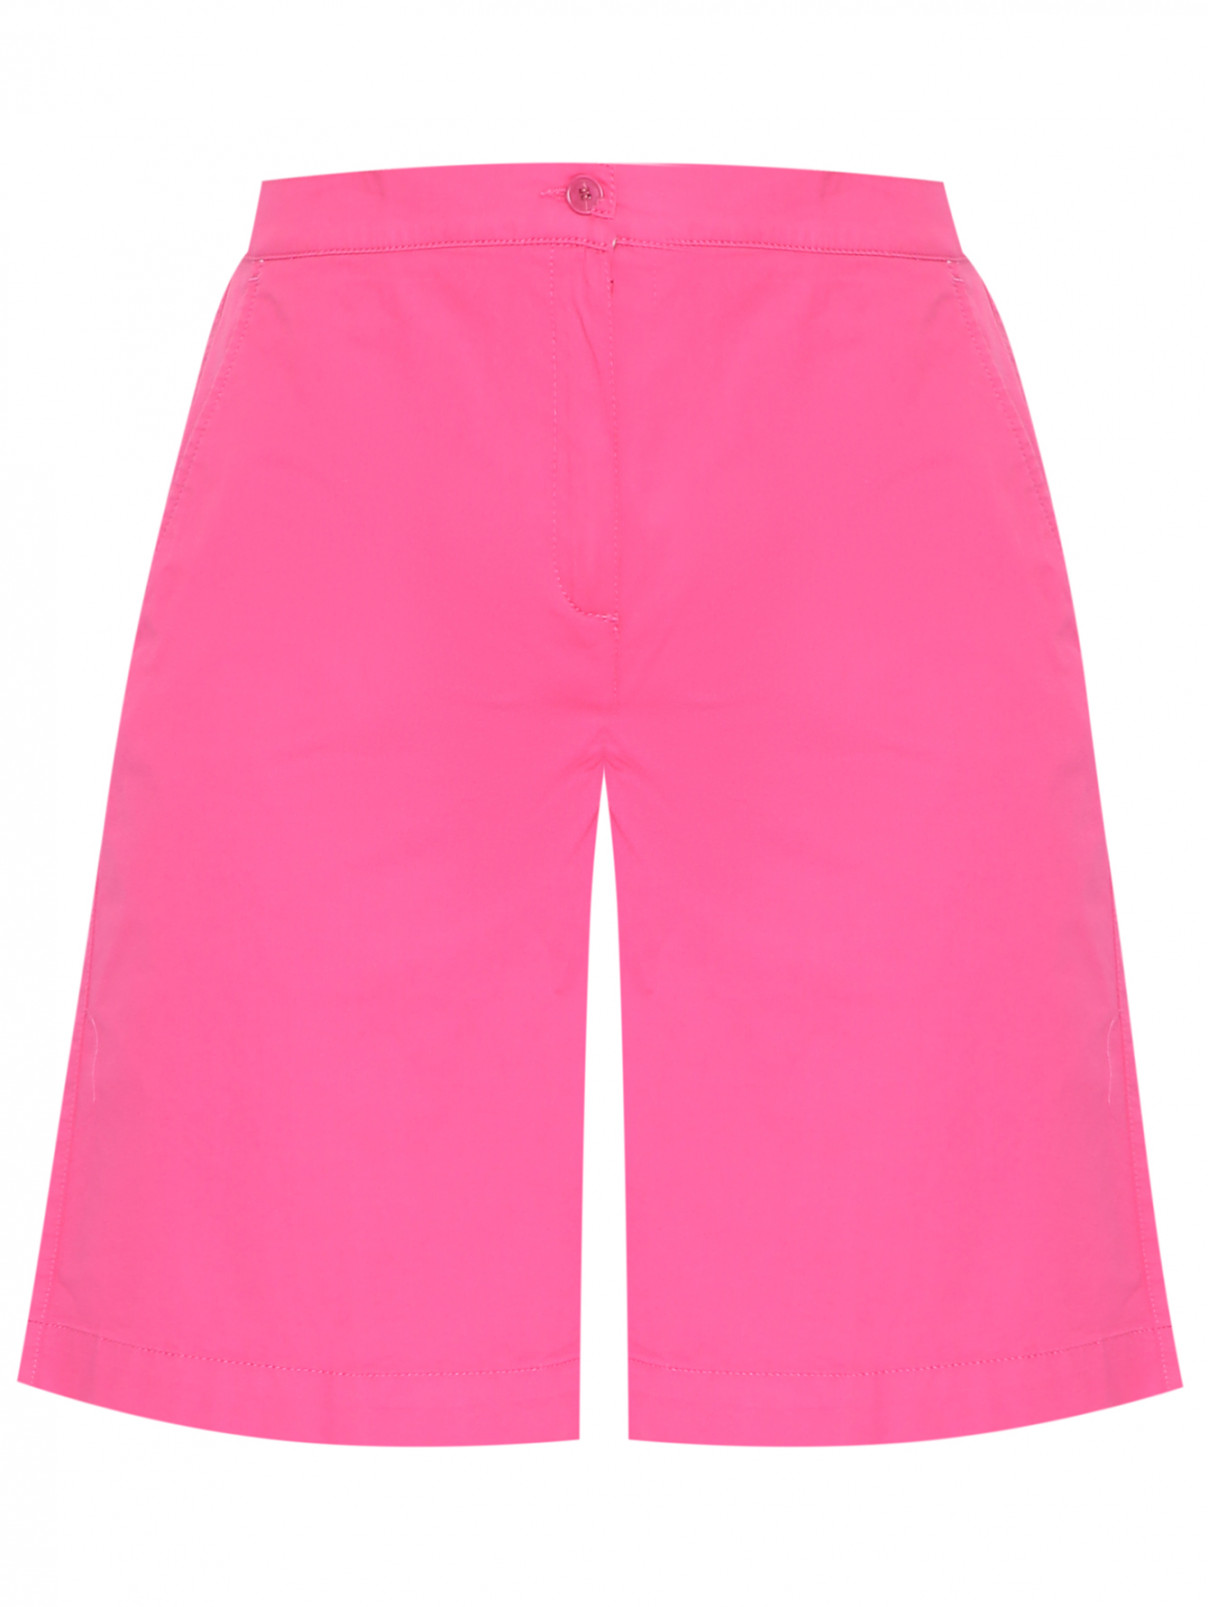 Шорты из хлопка с карманами Marina Rinaldi  –  Общий вид  – Цвет:  Розовый